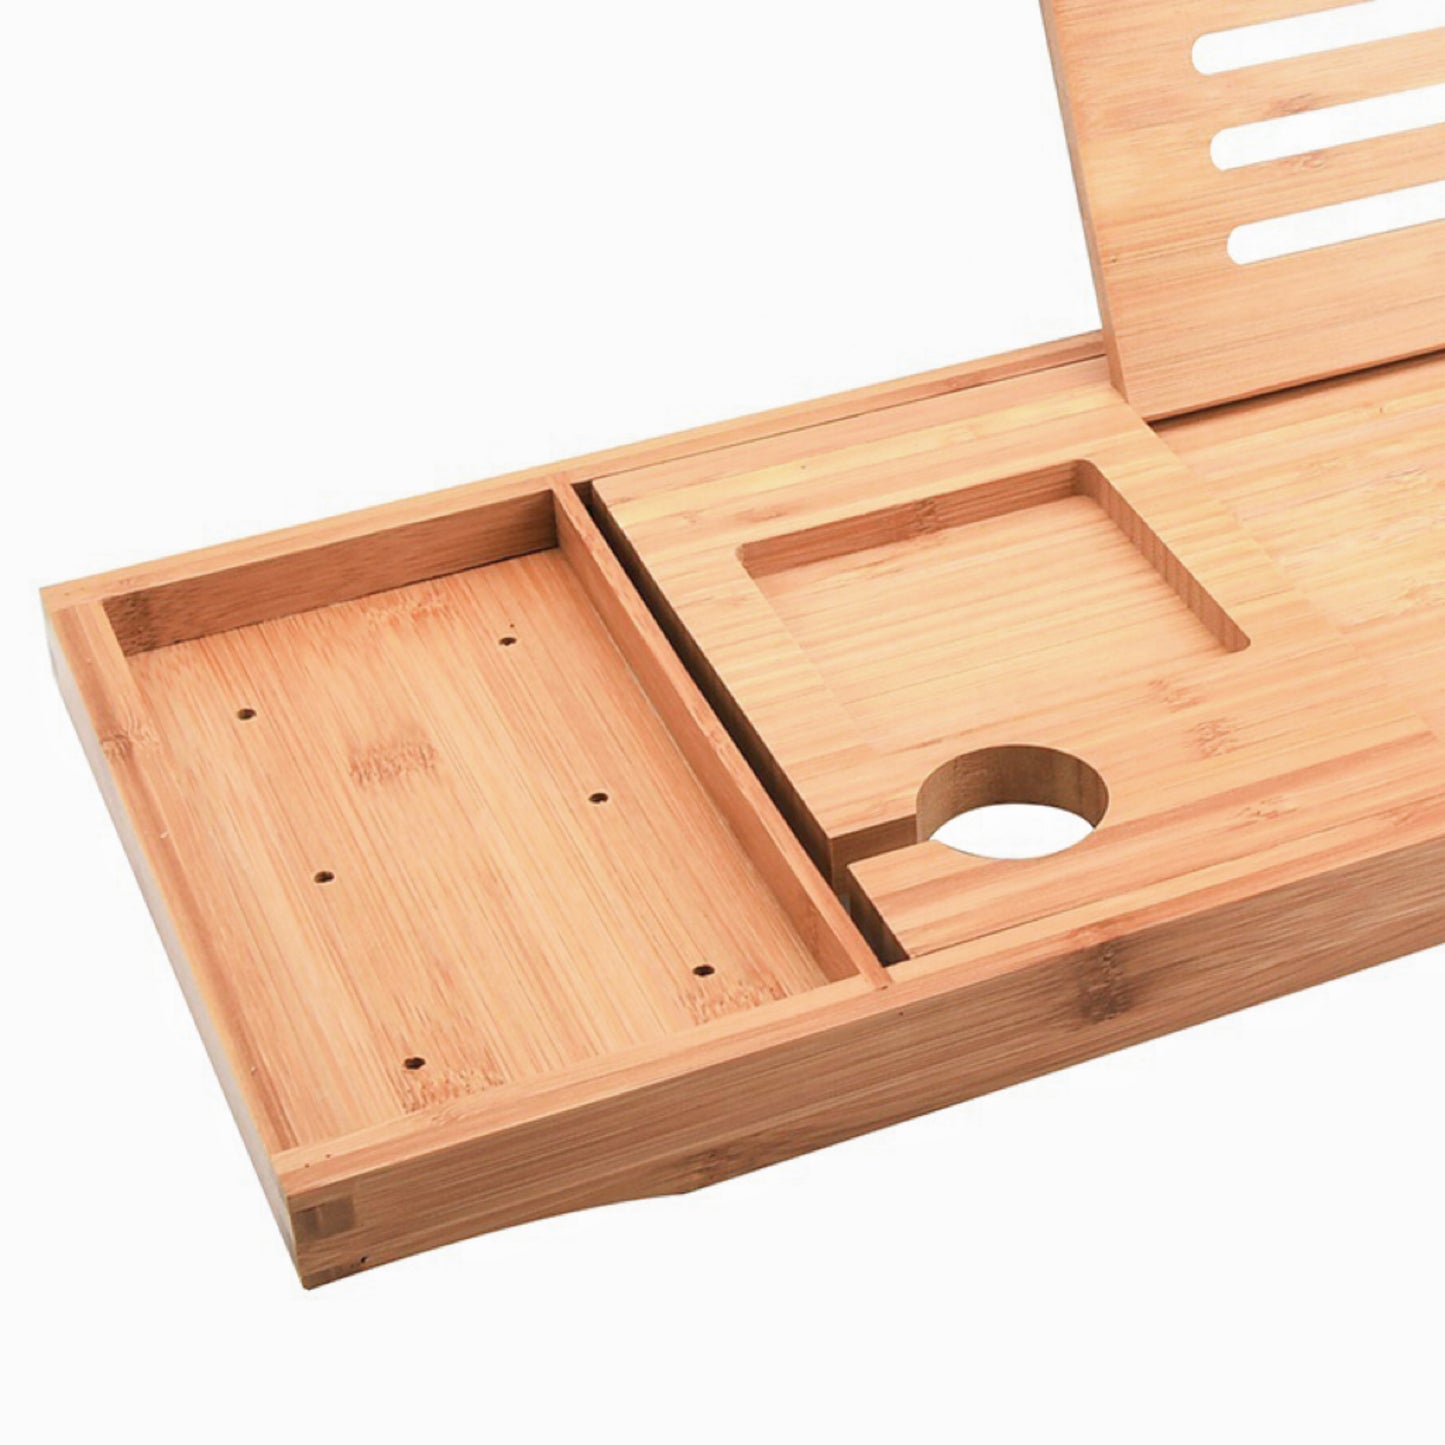 Expandable Bamboo Bathup Caddy Tray - Home & Garden > Bathroom Accessories - Zanlana Design and Home Decor